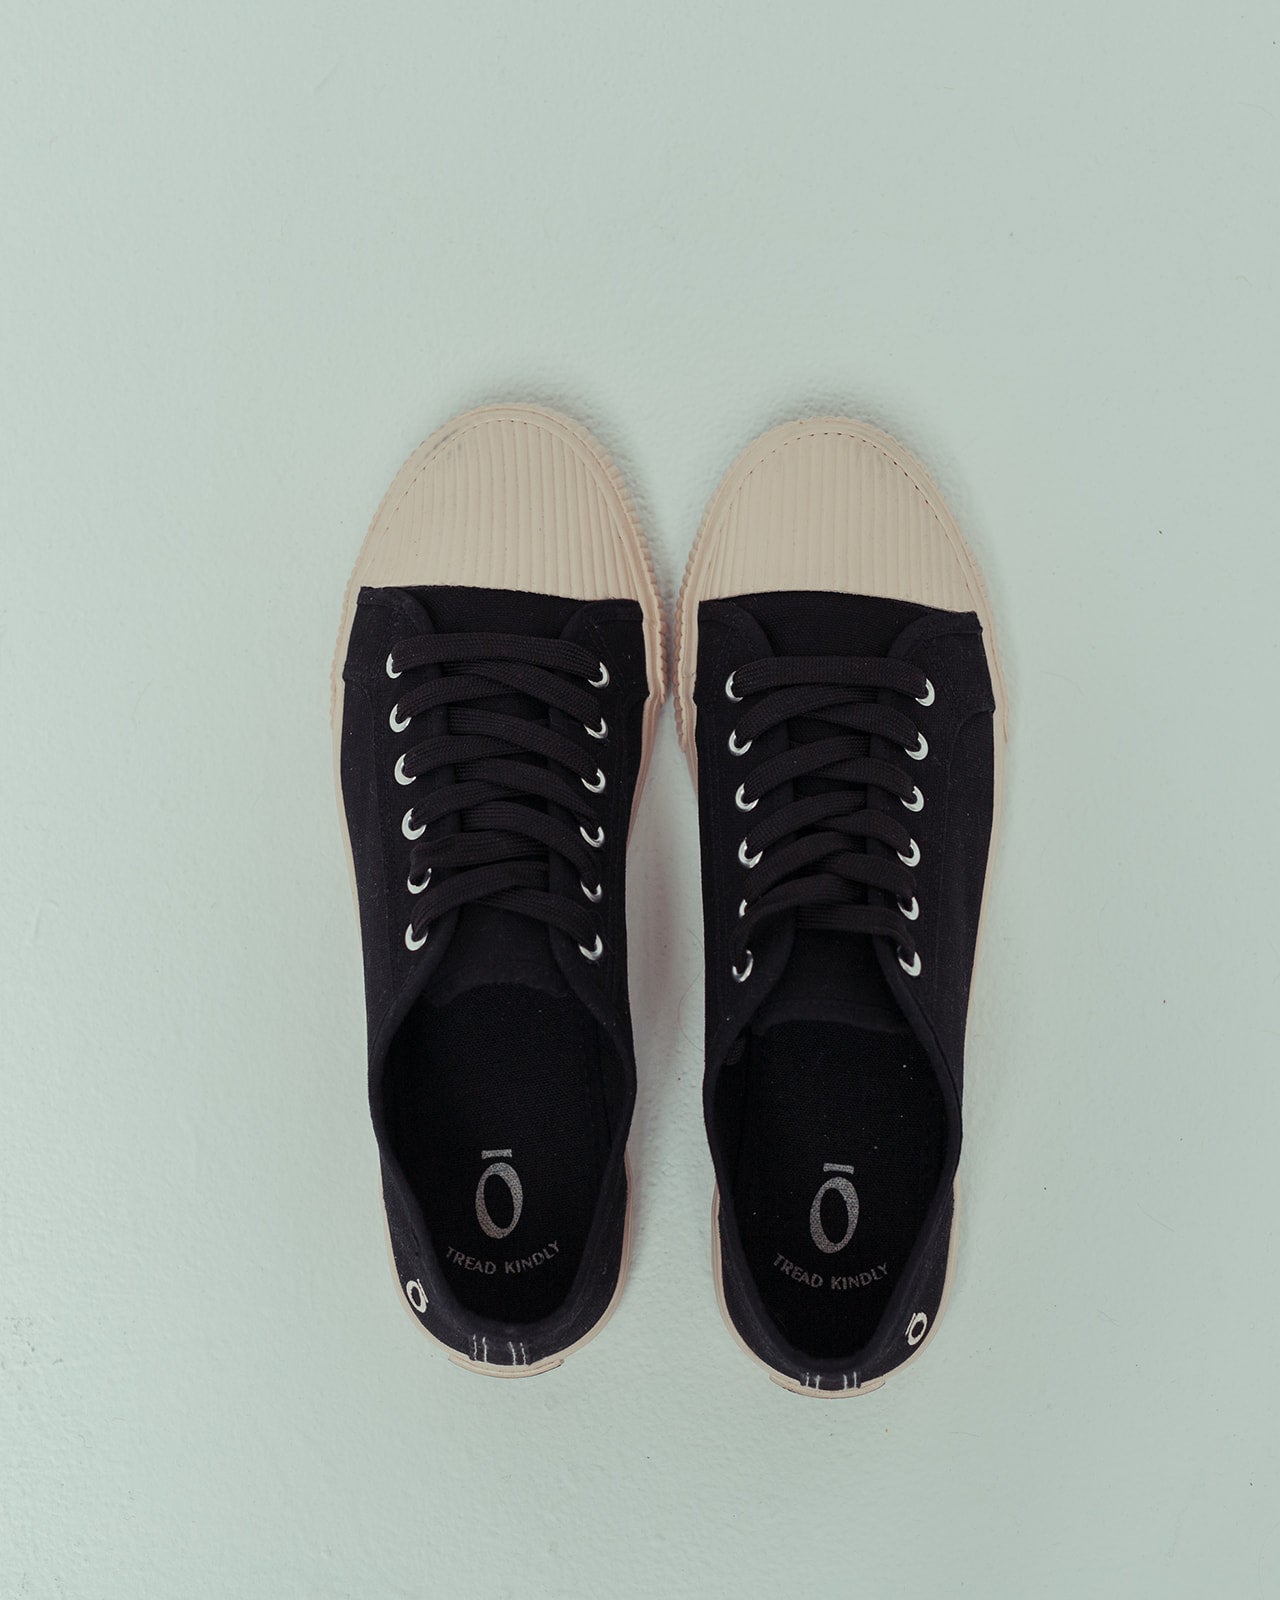 Noskin Shell-Toe Black Sneaker